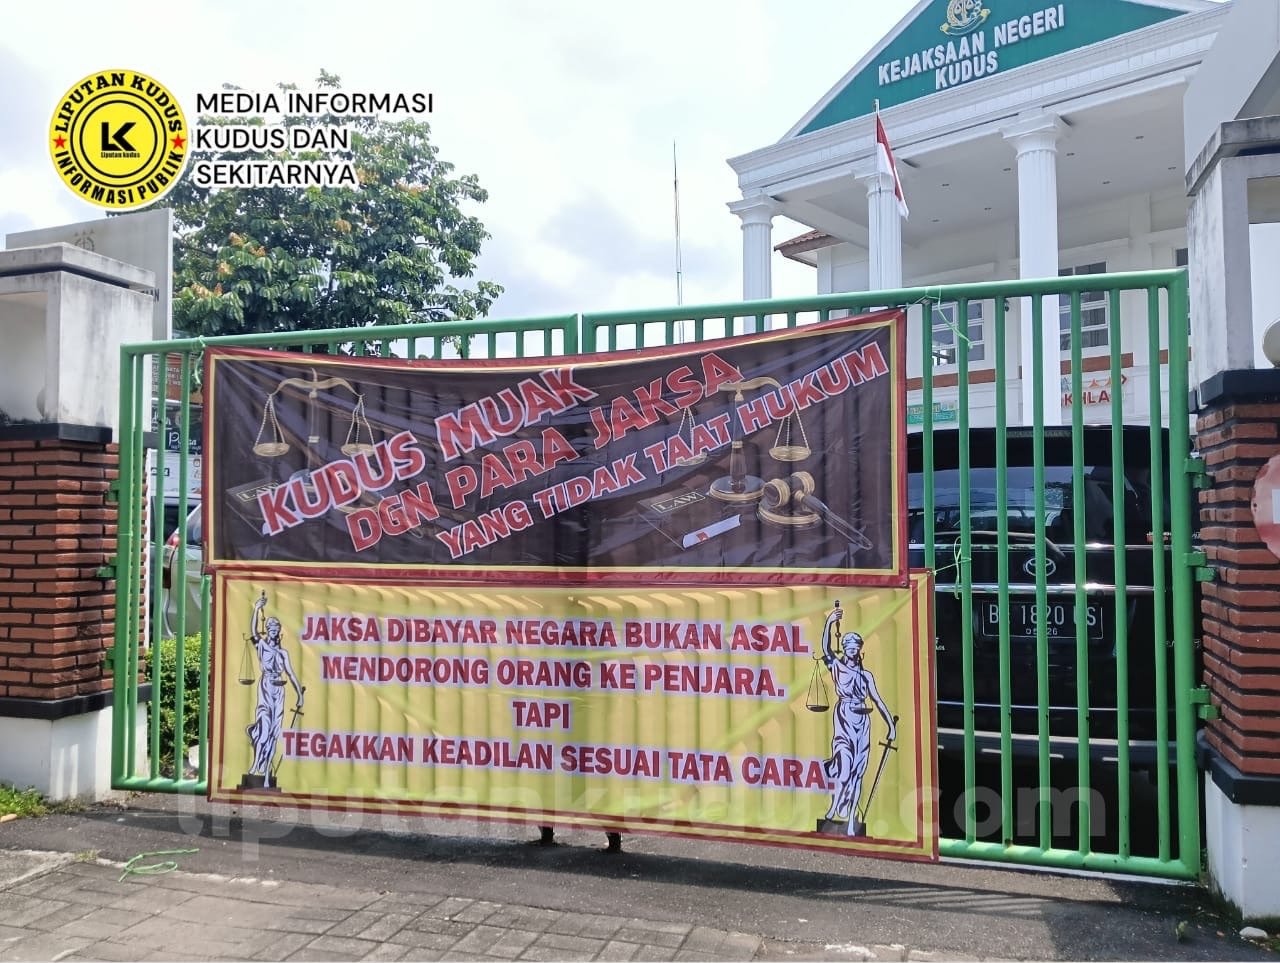 Aksi Demonstrasi Koalisi Rakyat Kudus Untuk Indonesia Bersih